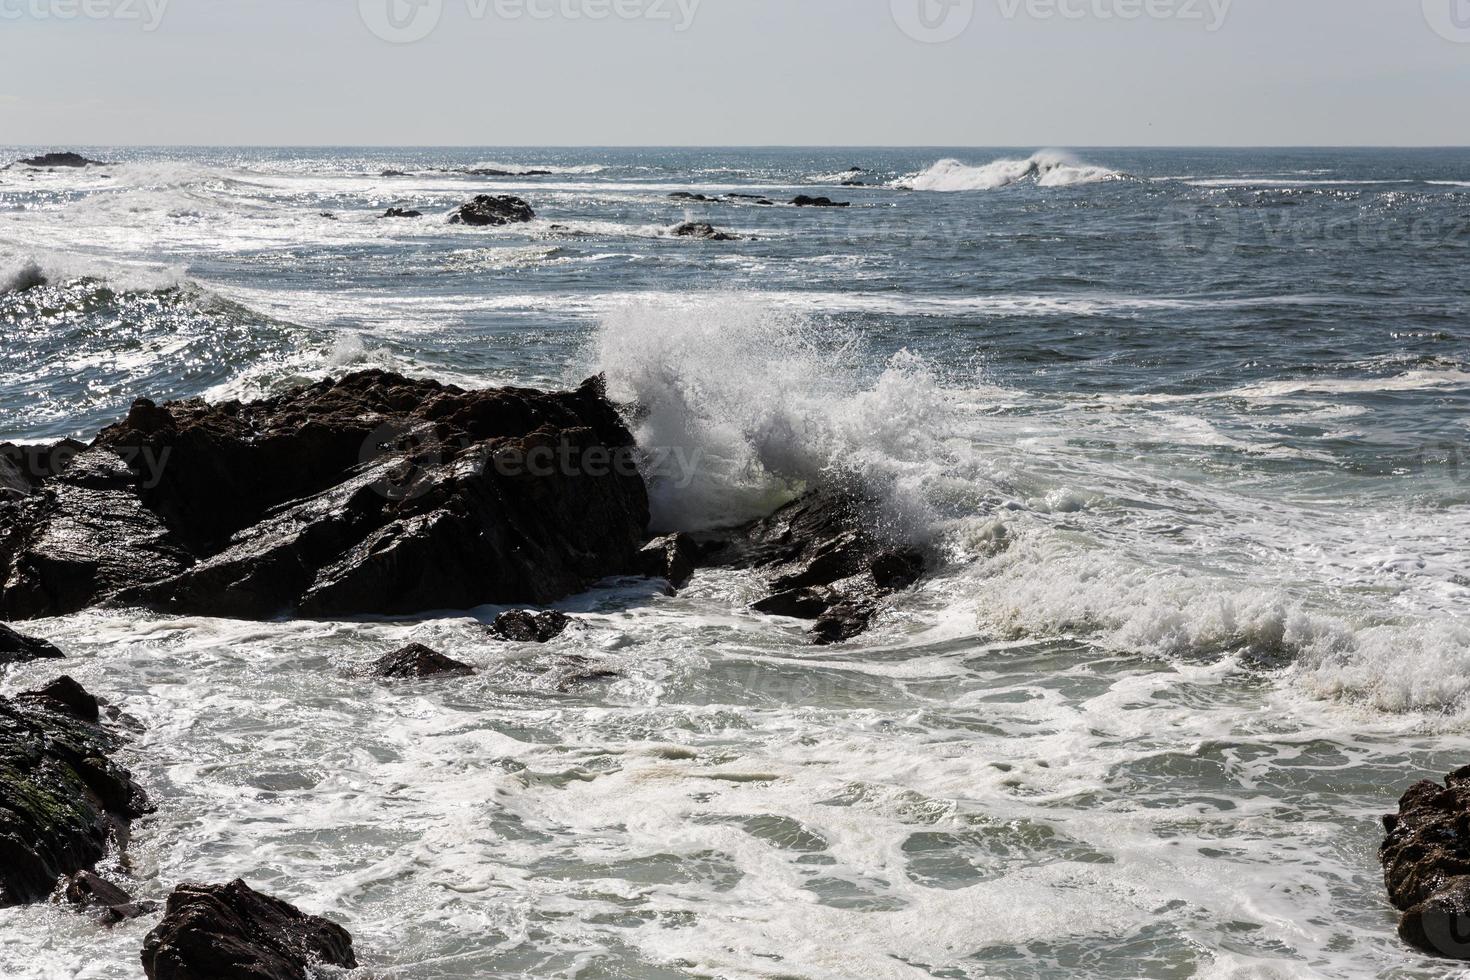 waves crashing over Portuguese Coast photo